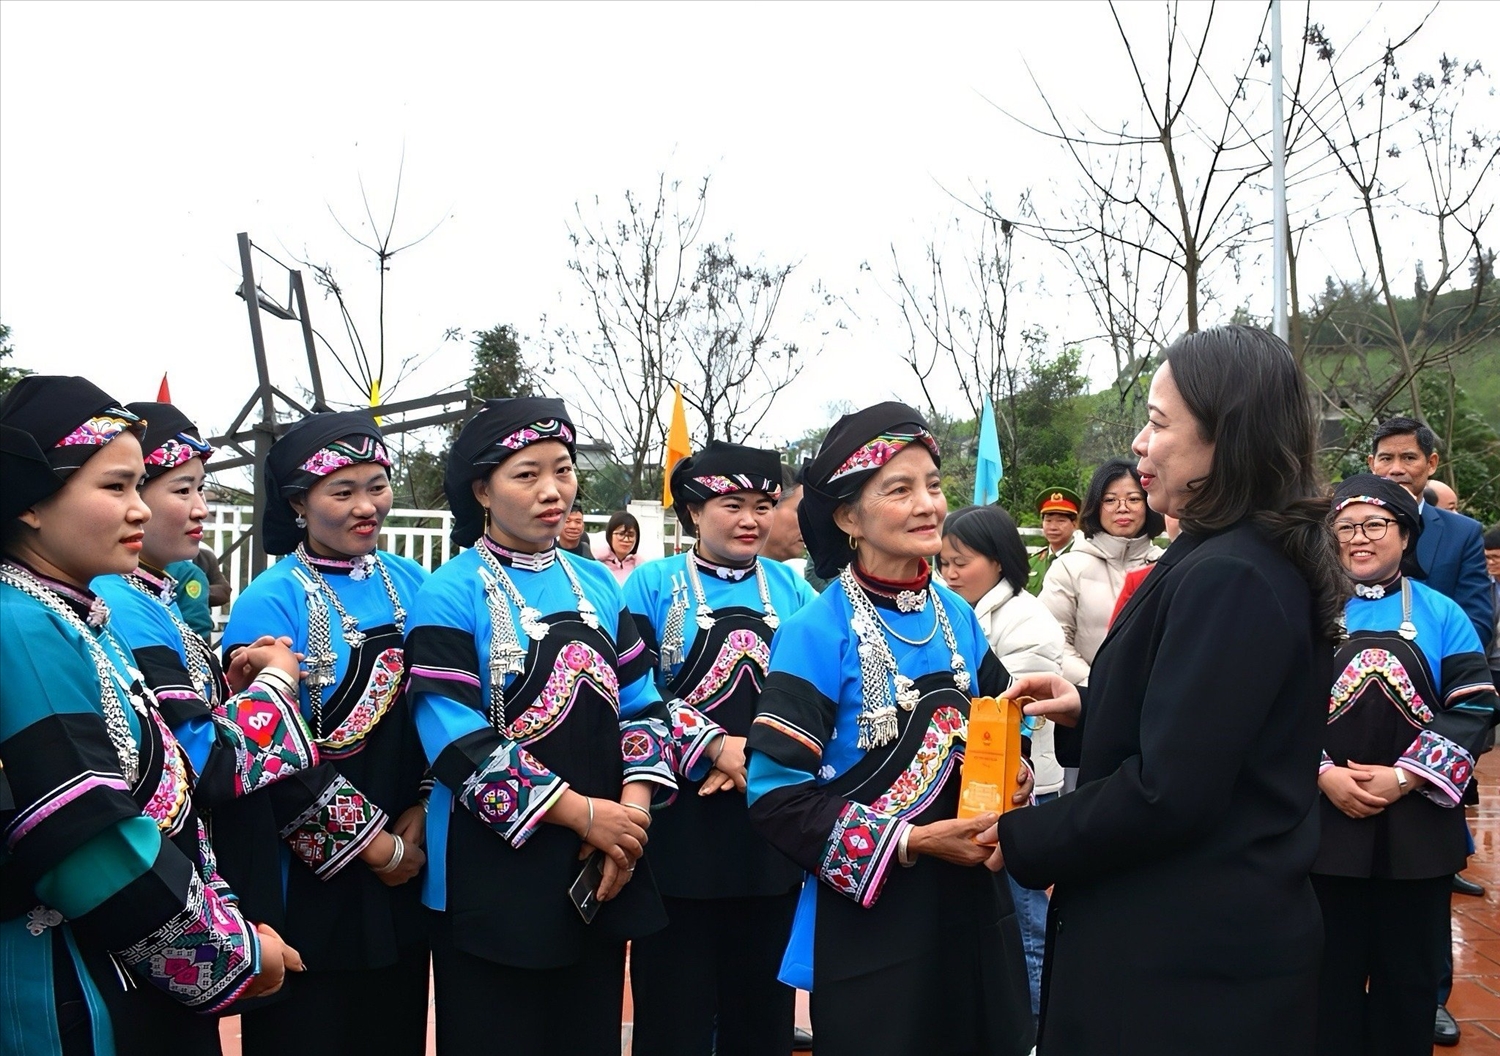 Trang phục truyền thống của dân tộc Bố Y với màu sắc chủ đạo là xanh – đen, trên trang phục có hoạ tiết hoa được thêu rất tỉ mỉ cùng với phụ kiện bằng bạc. Ảnh: UBND Tỉnh Lào Cai